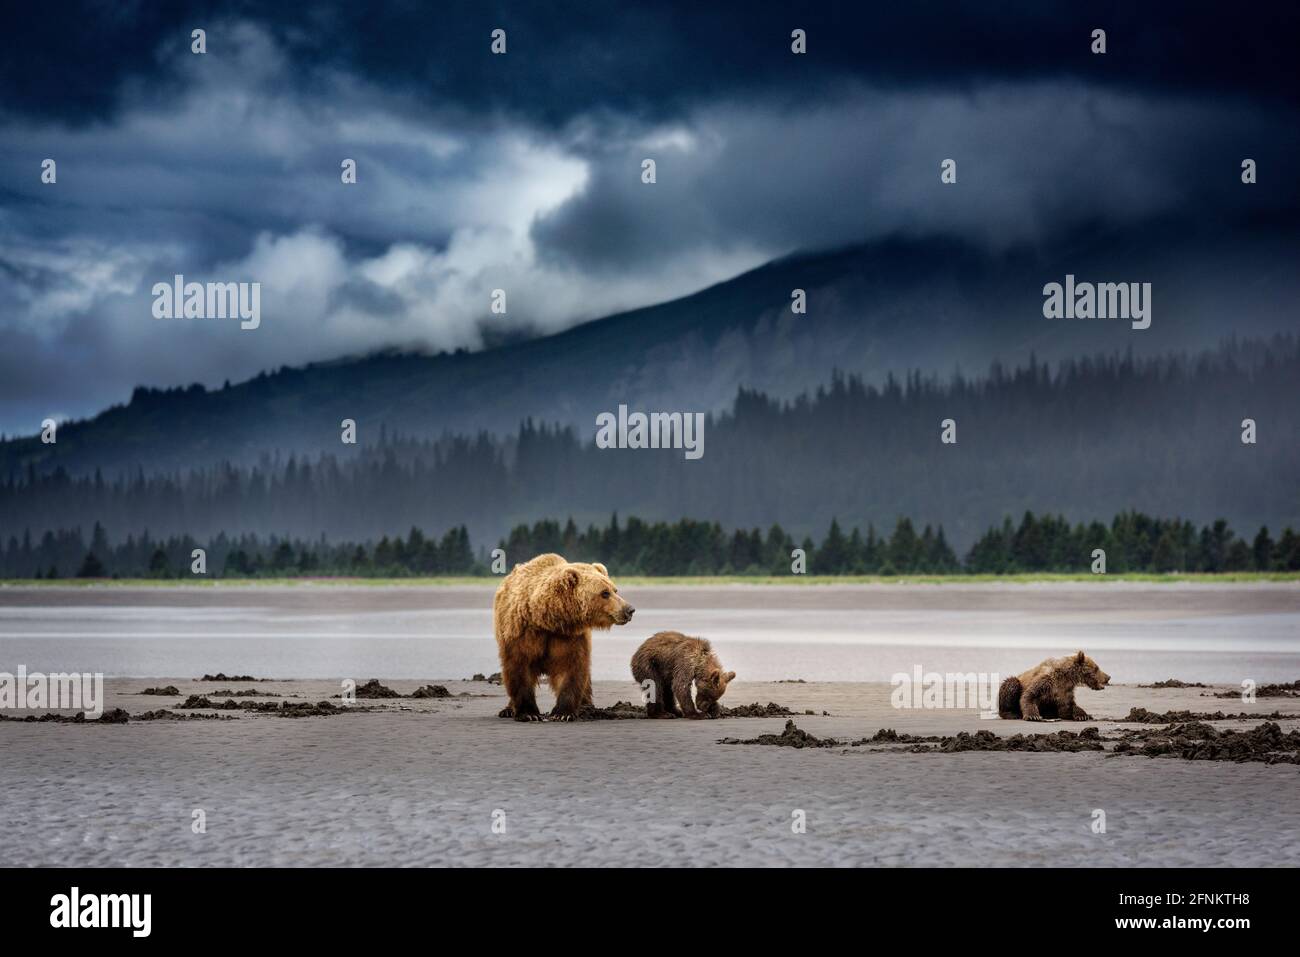 La famille des ours se bousculant dans des conditions de tempête Banque D'Images